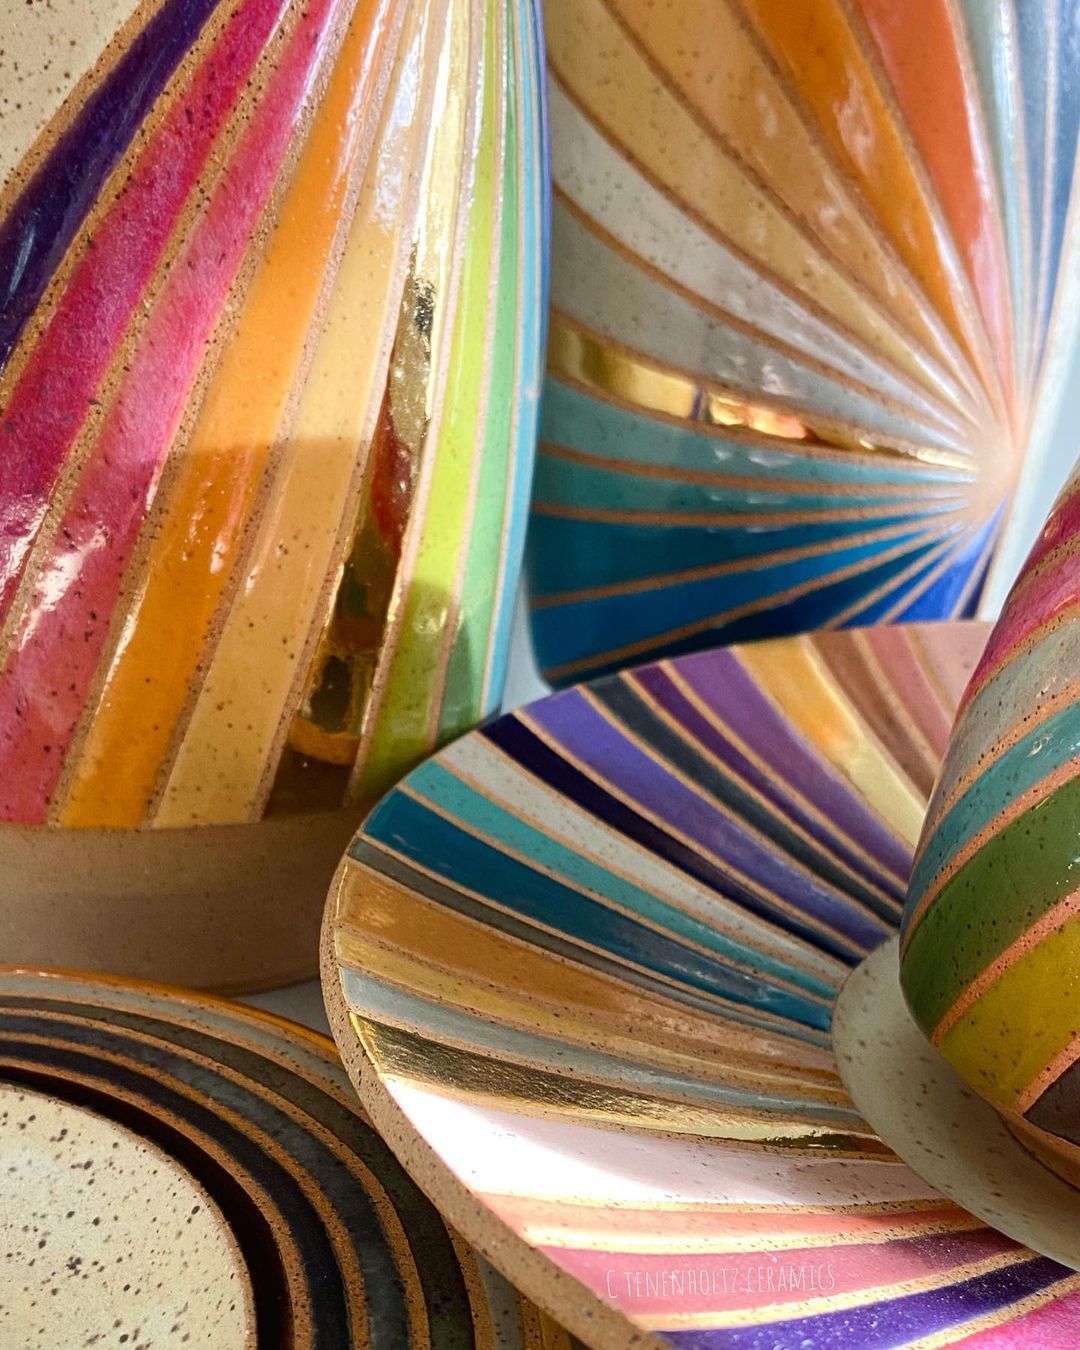 Rainbow Ceramics Gorgeous Multicolored Ceramic Pieces By Christine Tenenholtz (14)